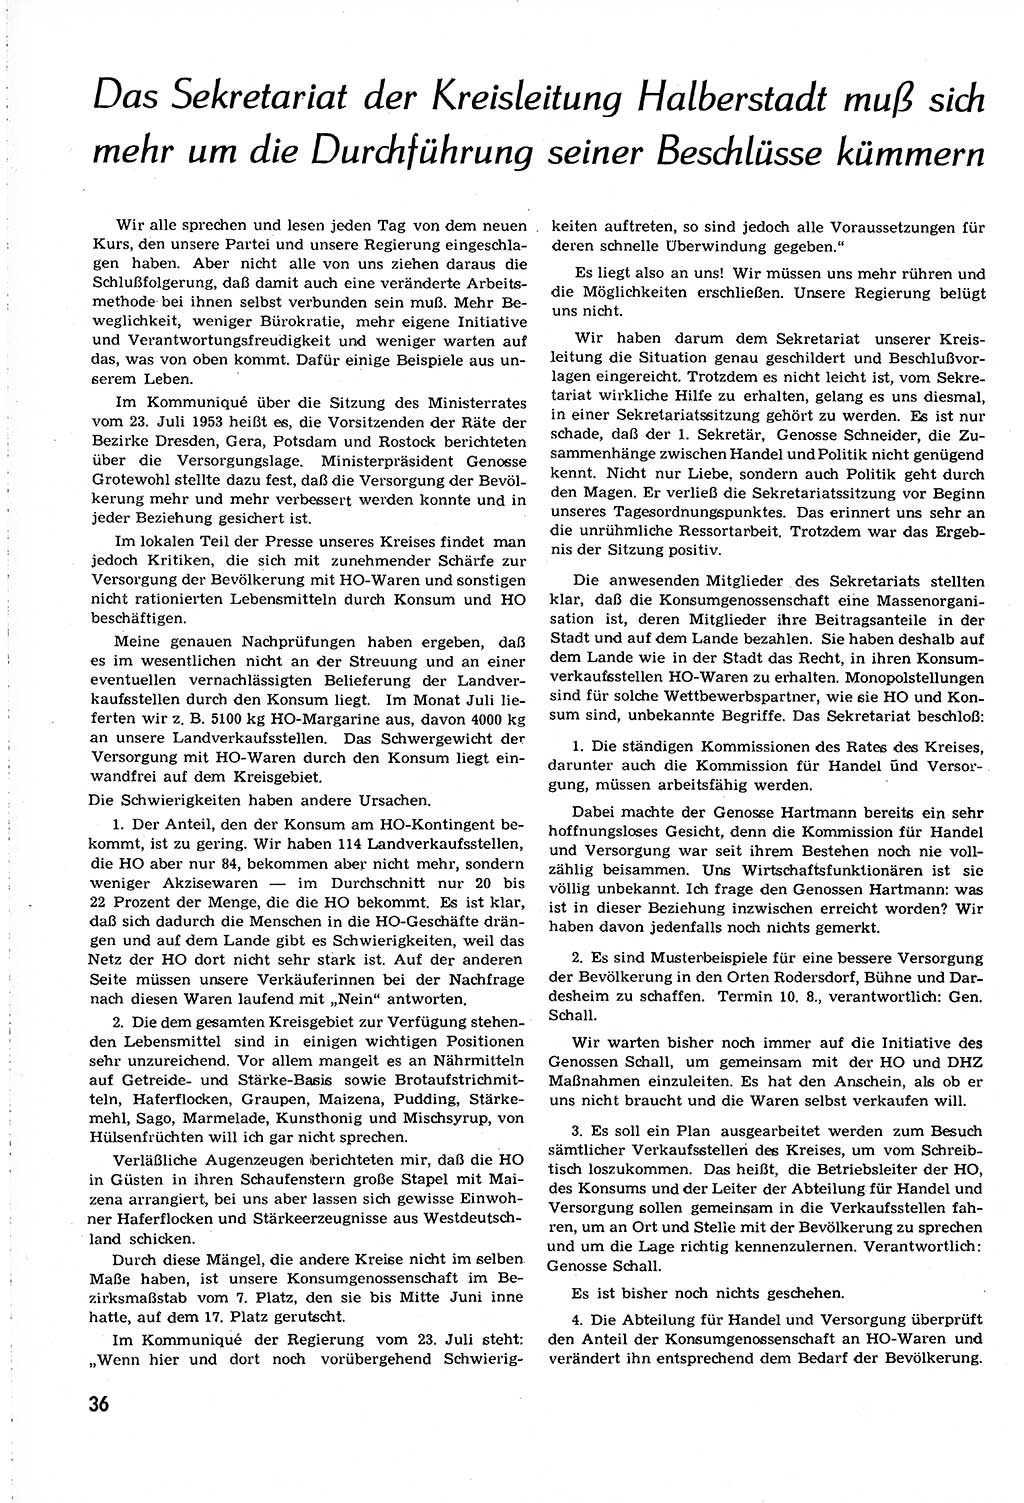 Neuer Weg (NW), Organ des Zentralkomitees (ZK) [Sozialistische Einheitspartei Deutschlands (SED)] für alle Parteiarbeiter, 8. Jahrgang [Deutsche Demokratische Republik (DDR)] 1953, Heft 16/36 (NW ZK SED DDR 1953, H. 16/36)